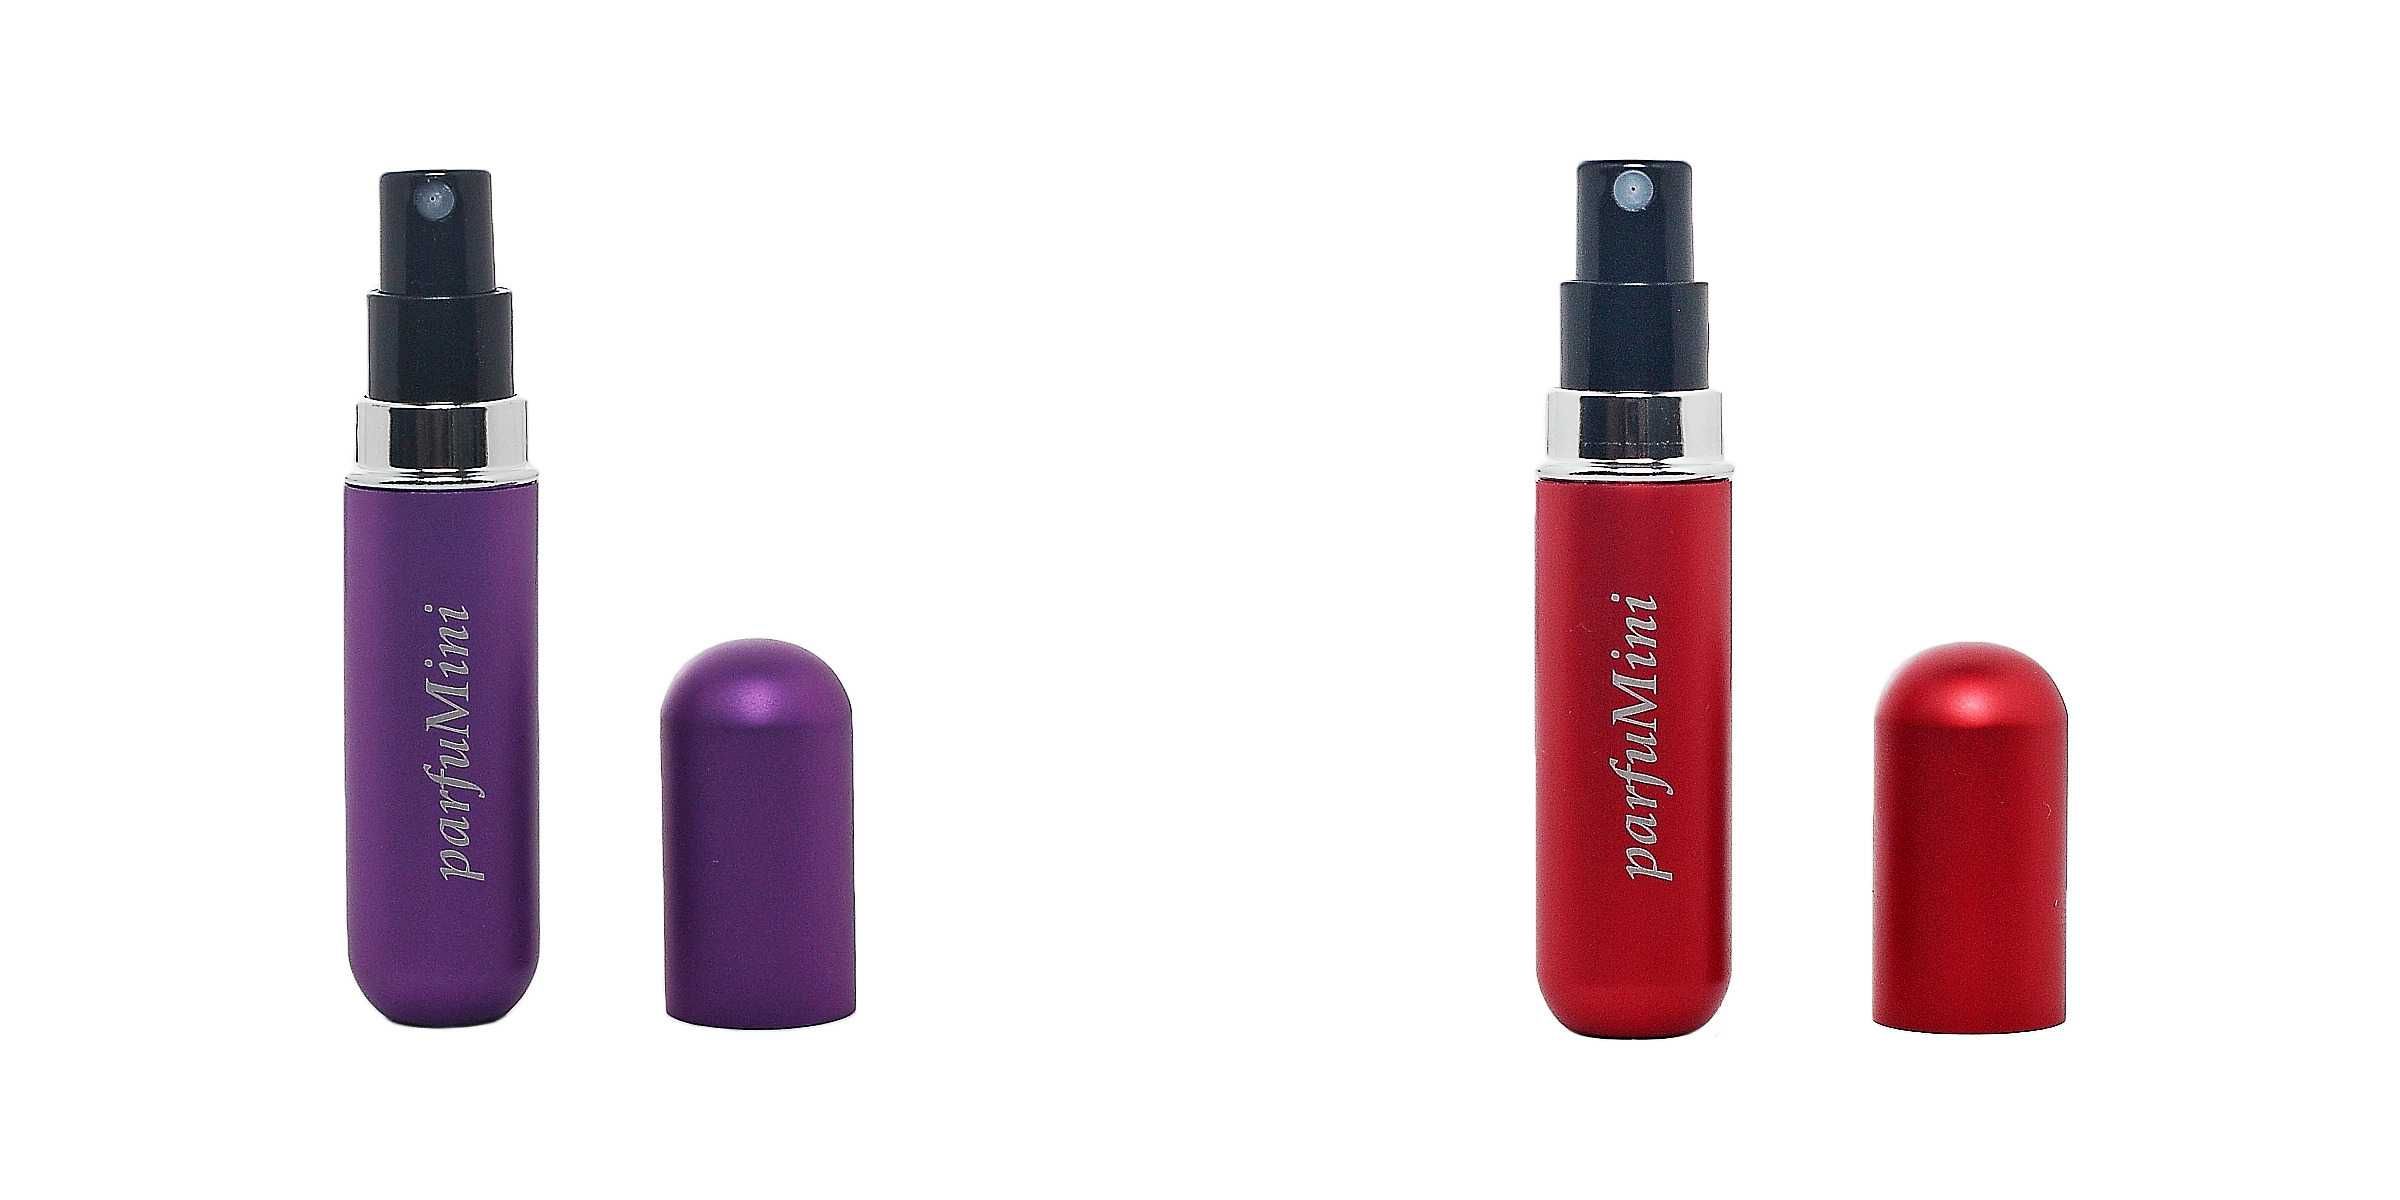 Атомайзери для парфумерії багаторазового використання (2 штуки)